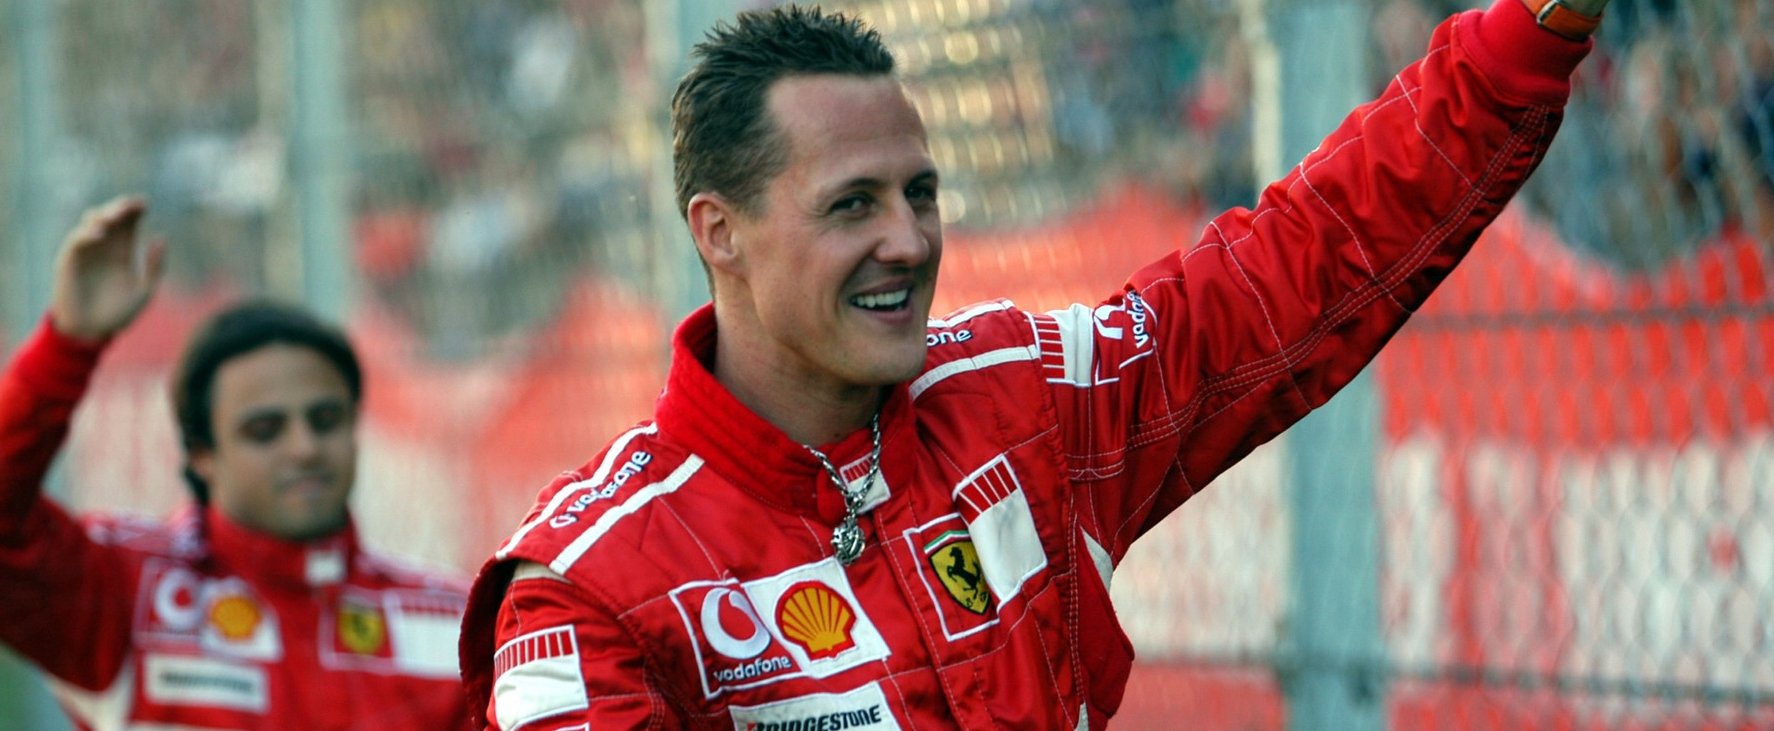 Hátborzongató felvétel került elő Michael Schumacher horrorbalesetéről